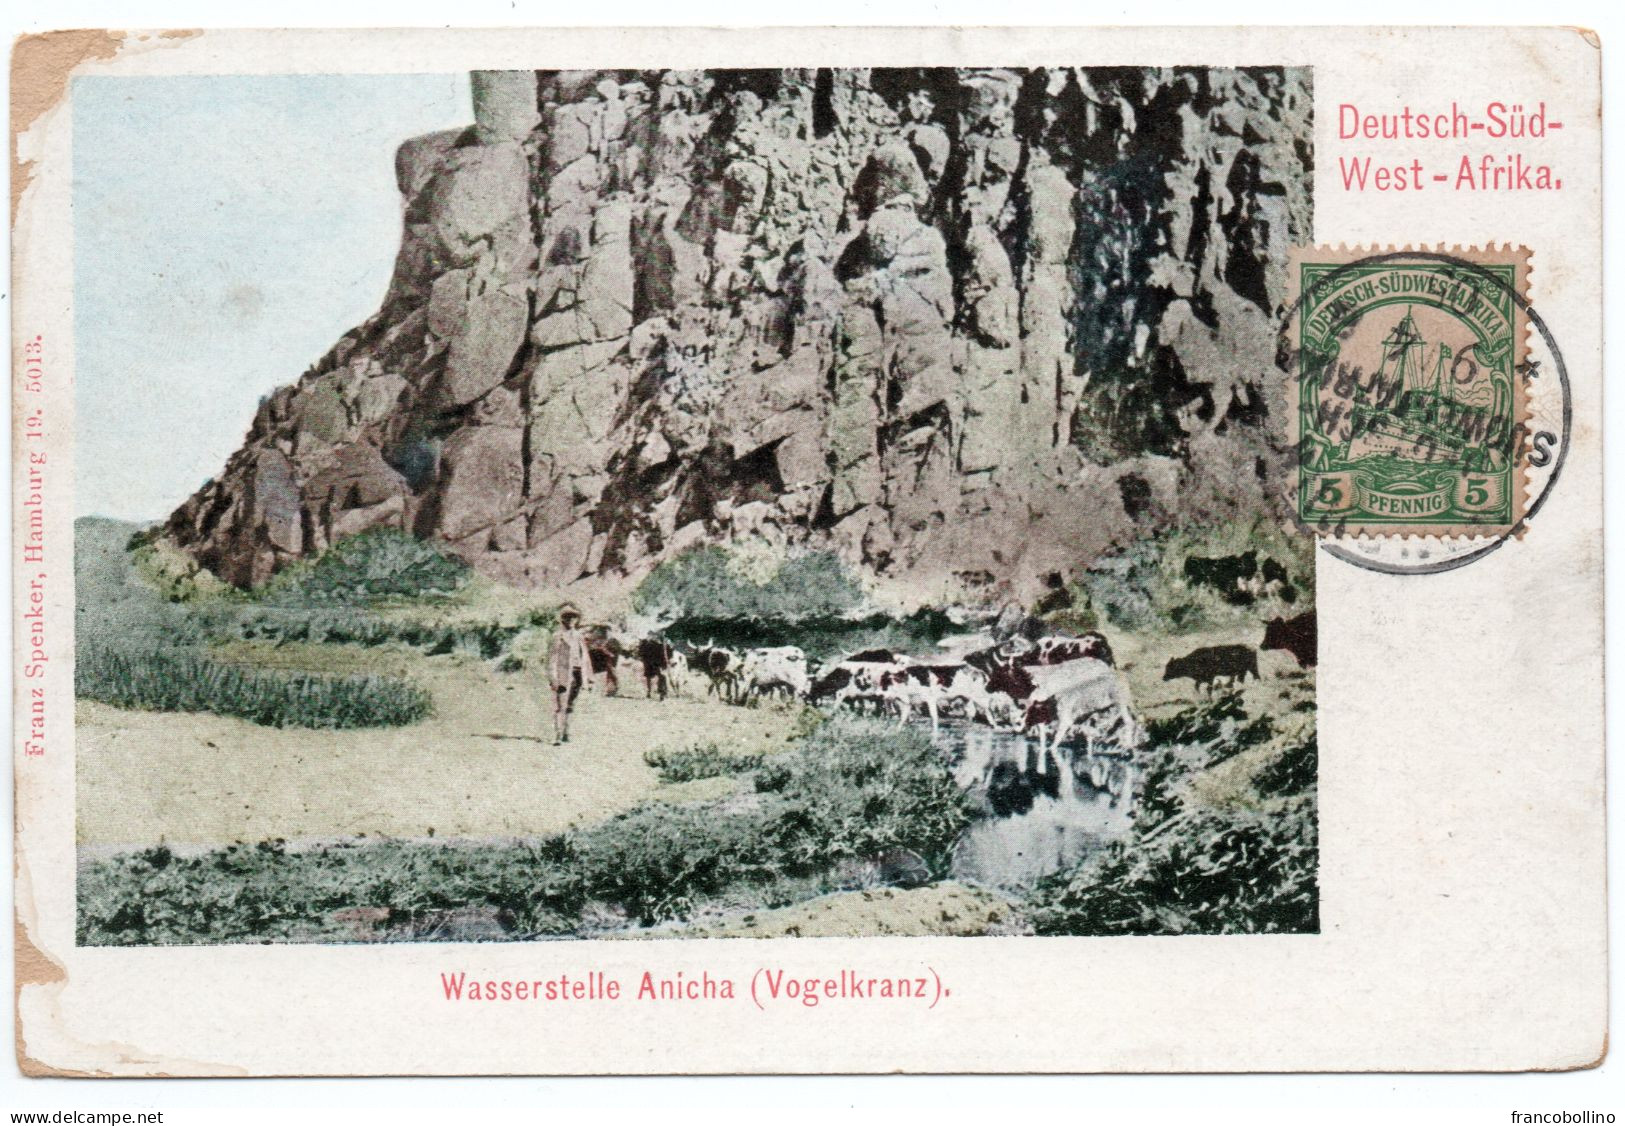 SOUTHWEST GERMAN AFRICA / NAMIBIA -WASSERSTELLE ANICHA (VOGELKRANZ) - WINDHUK CANCEL 1905 - Sud-Ouest Africain Allemand